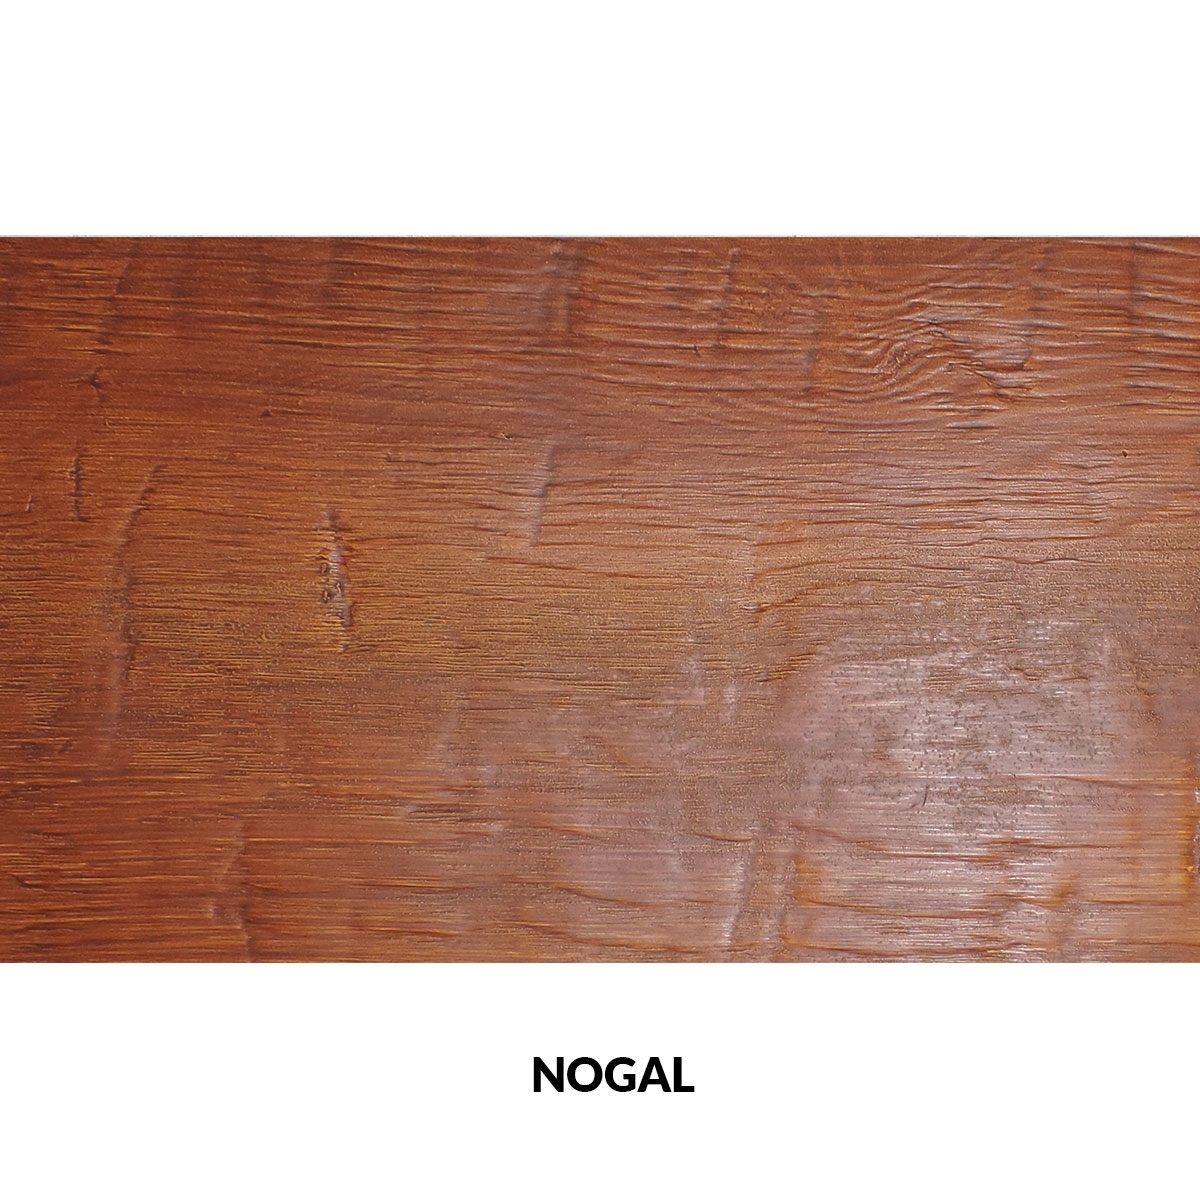 300x62cm painel rústico de três lâminas de imitação de madeira nogueira nogueira